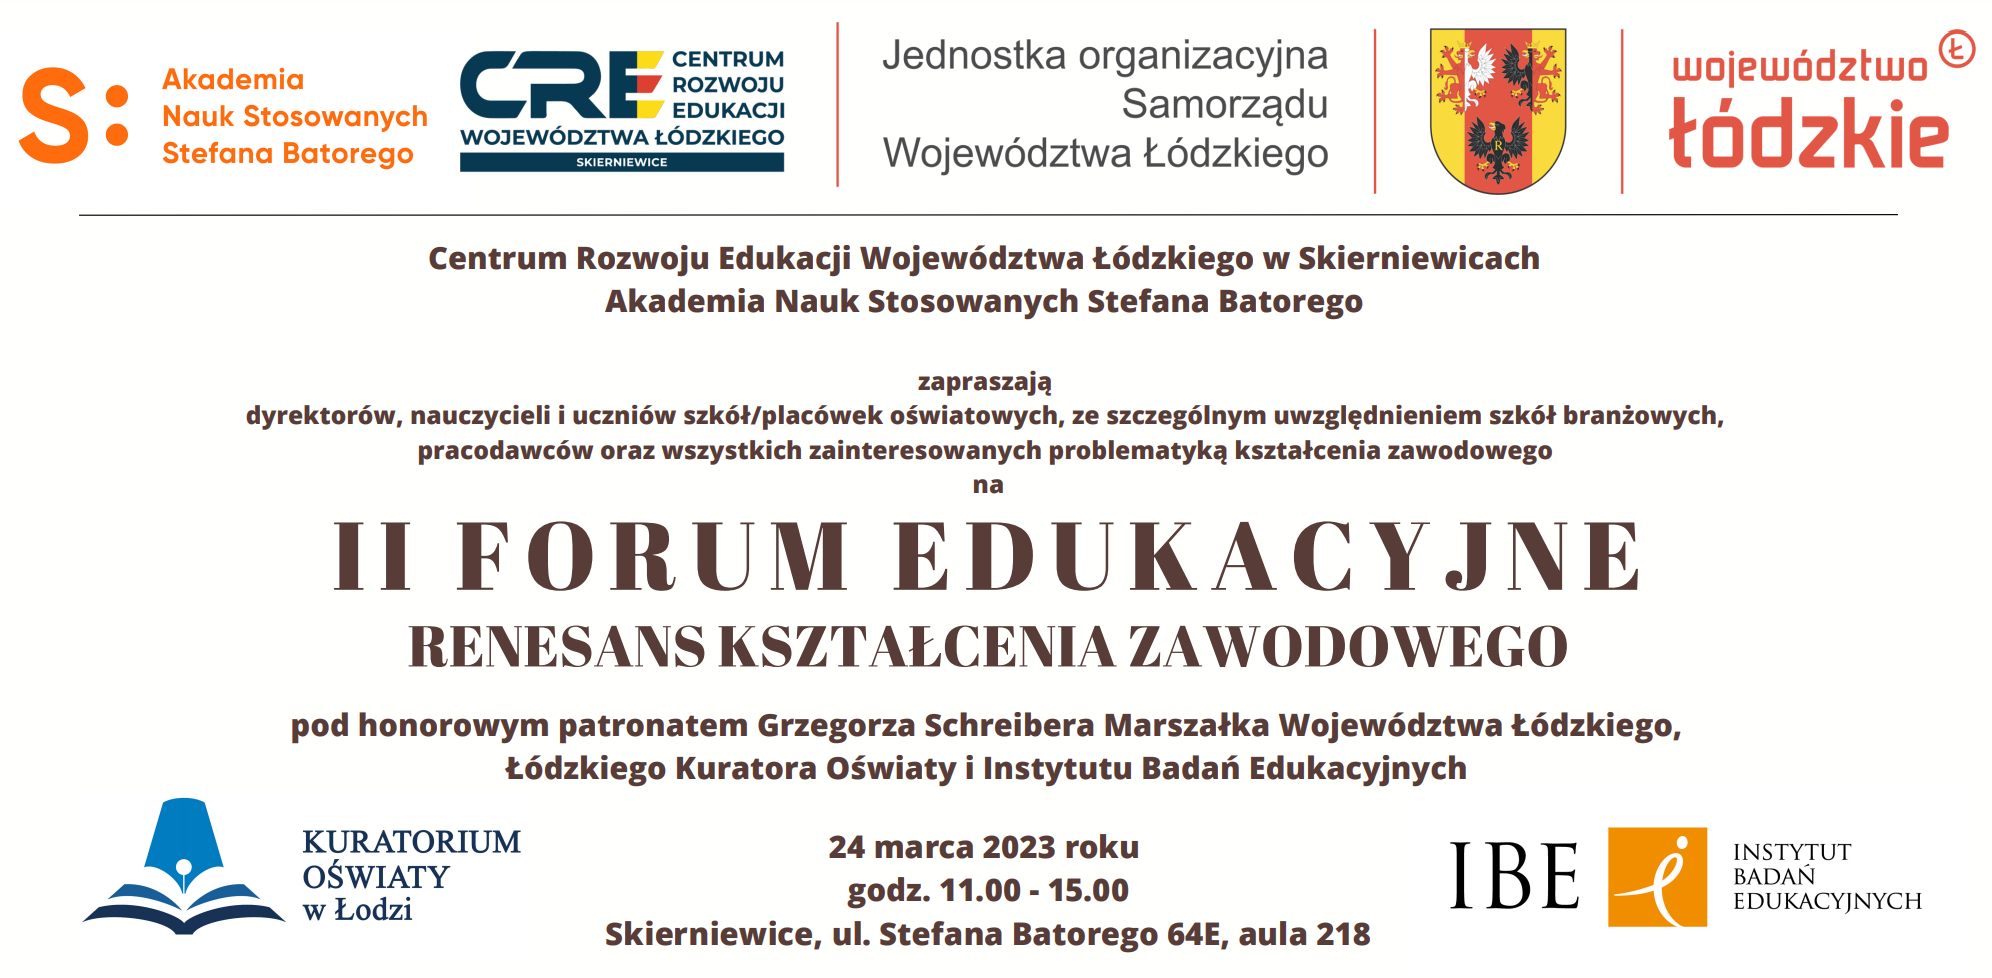 II Forum Edukacyjne z udziałem ekspertek ZSK